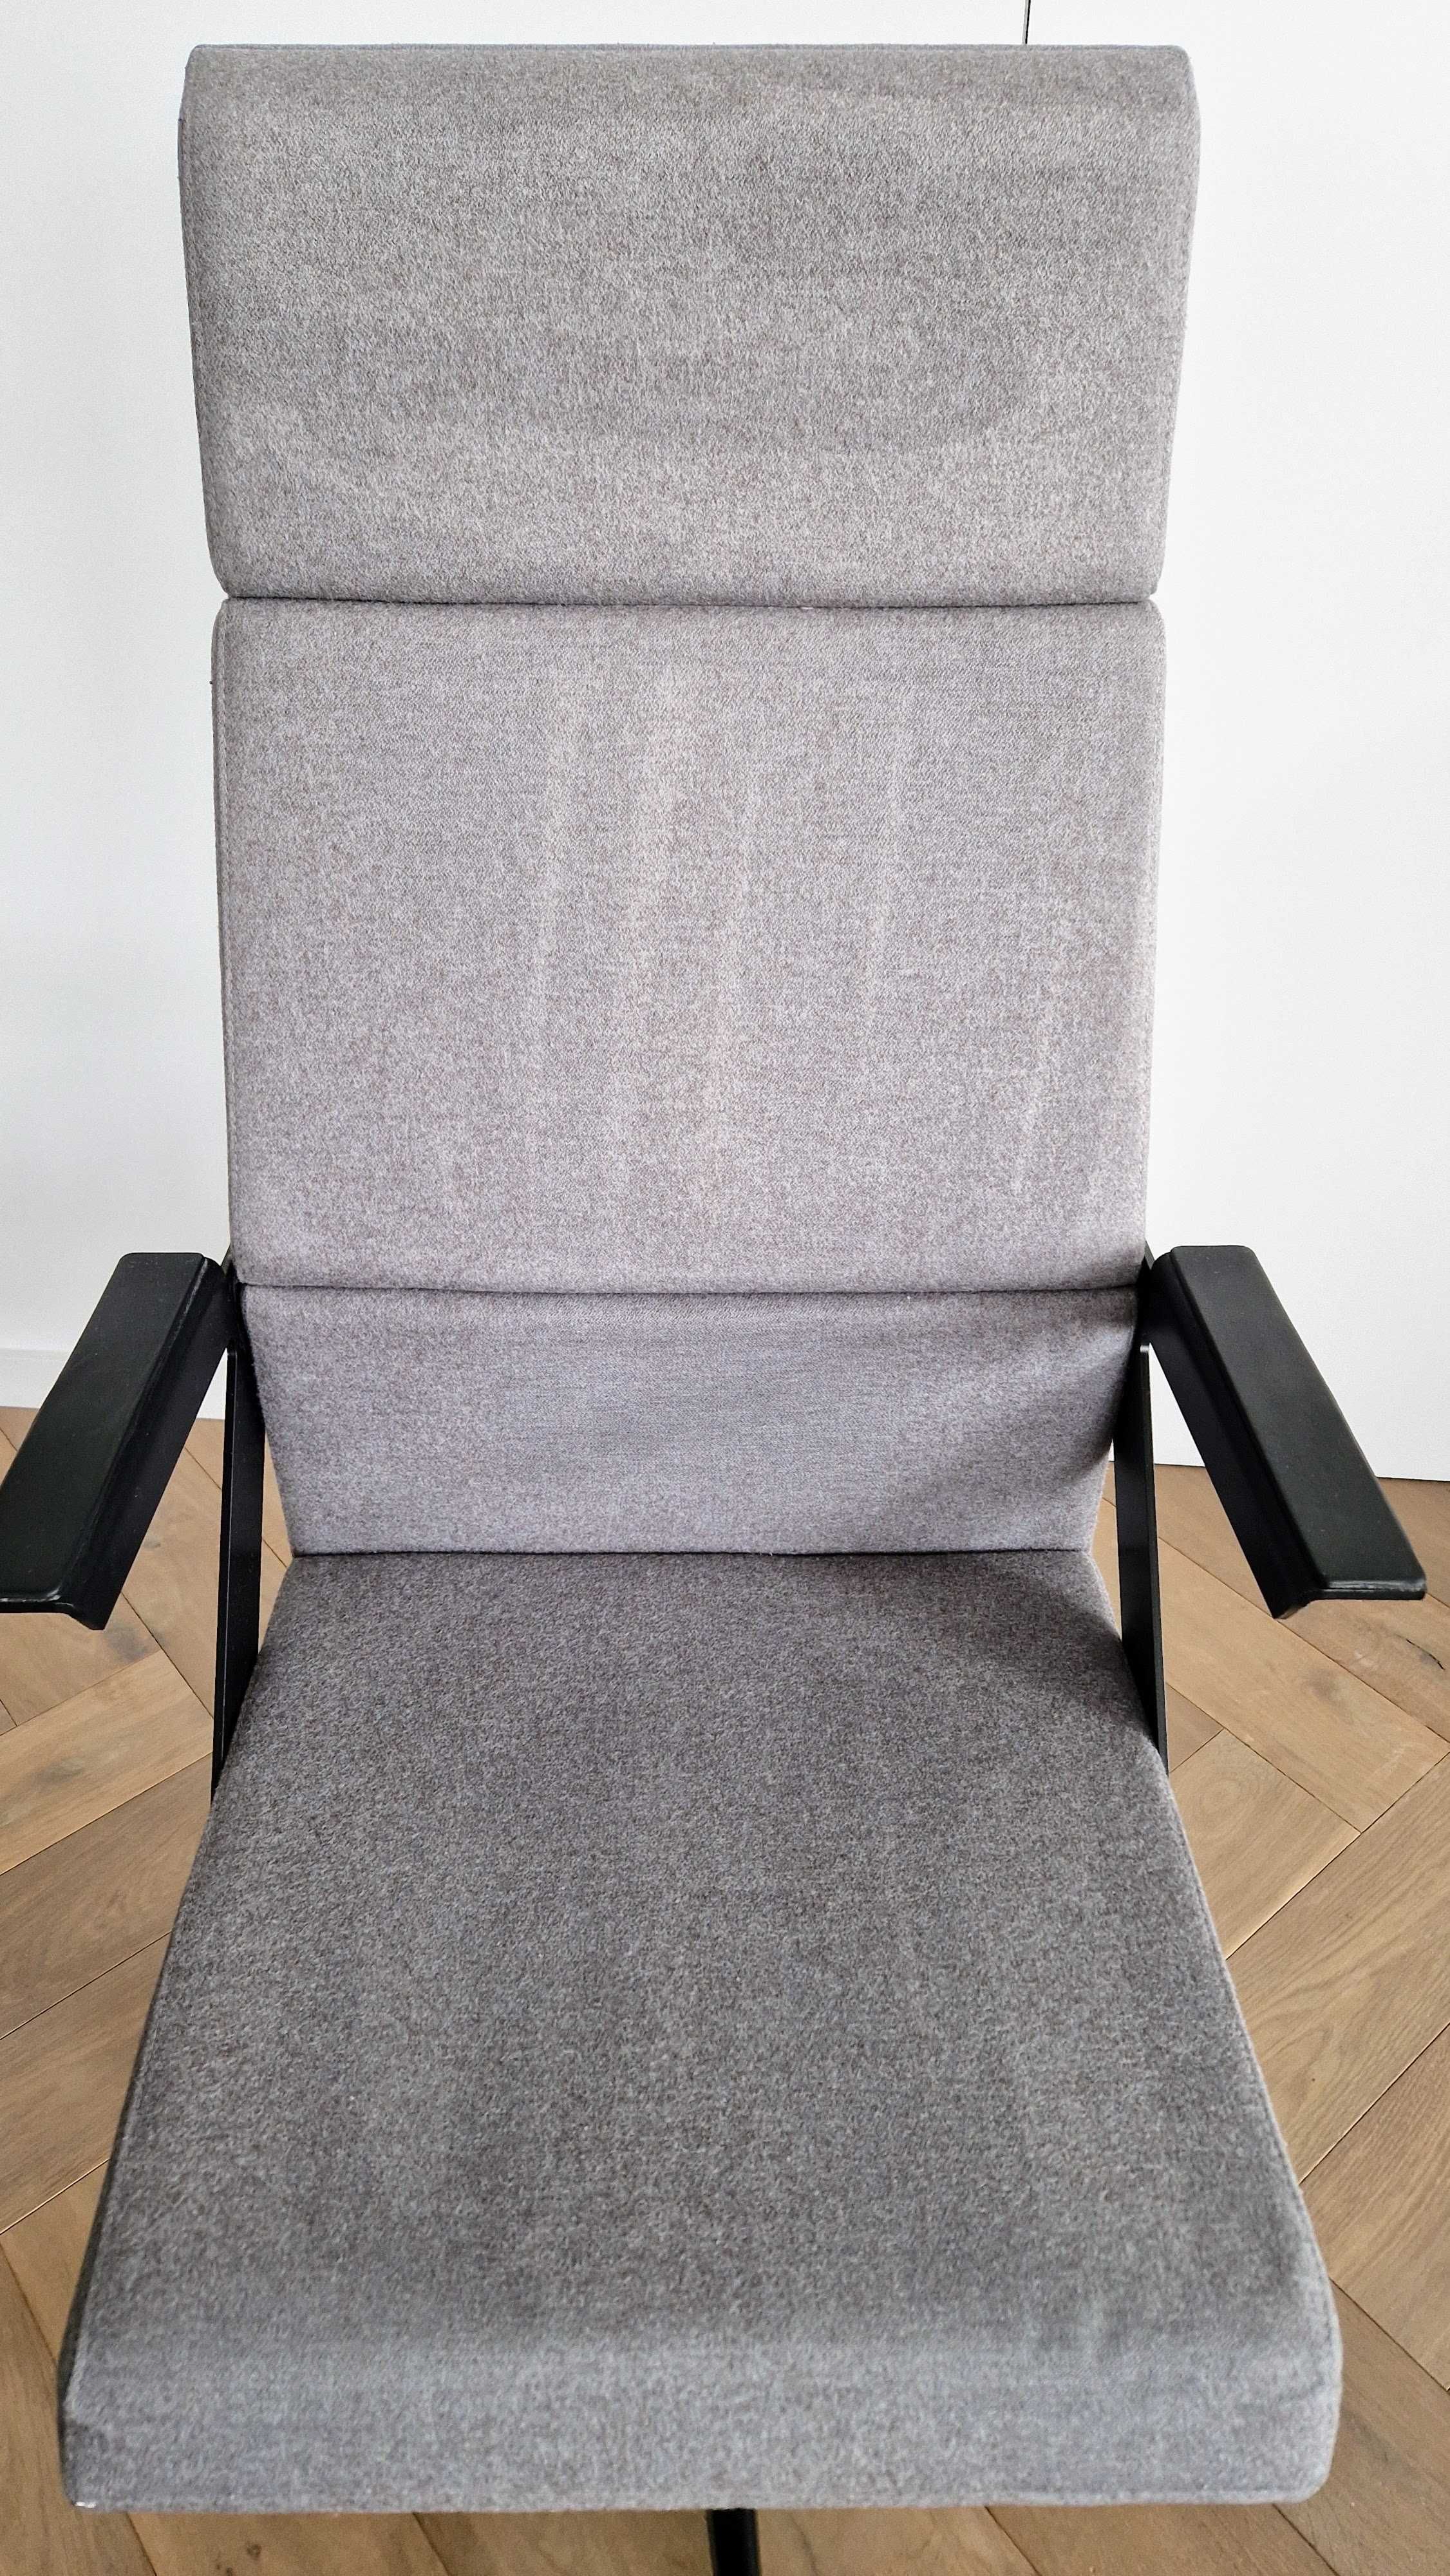 Prestiżowy fotel obrotowy marki VANK - wysokie oparcie, model Fil